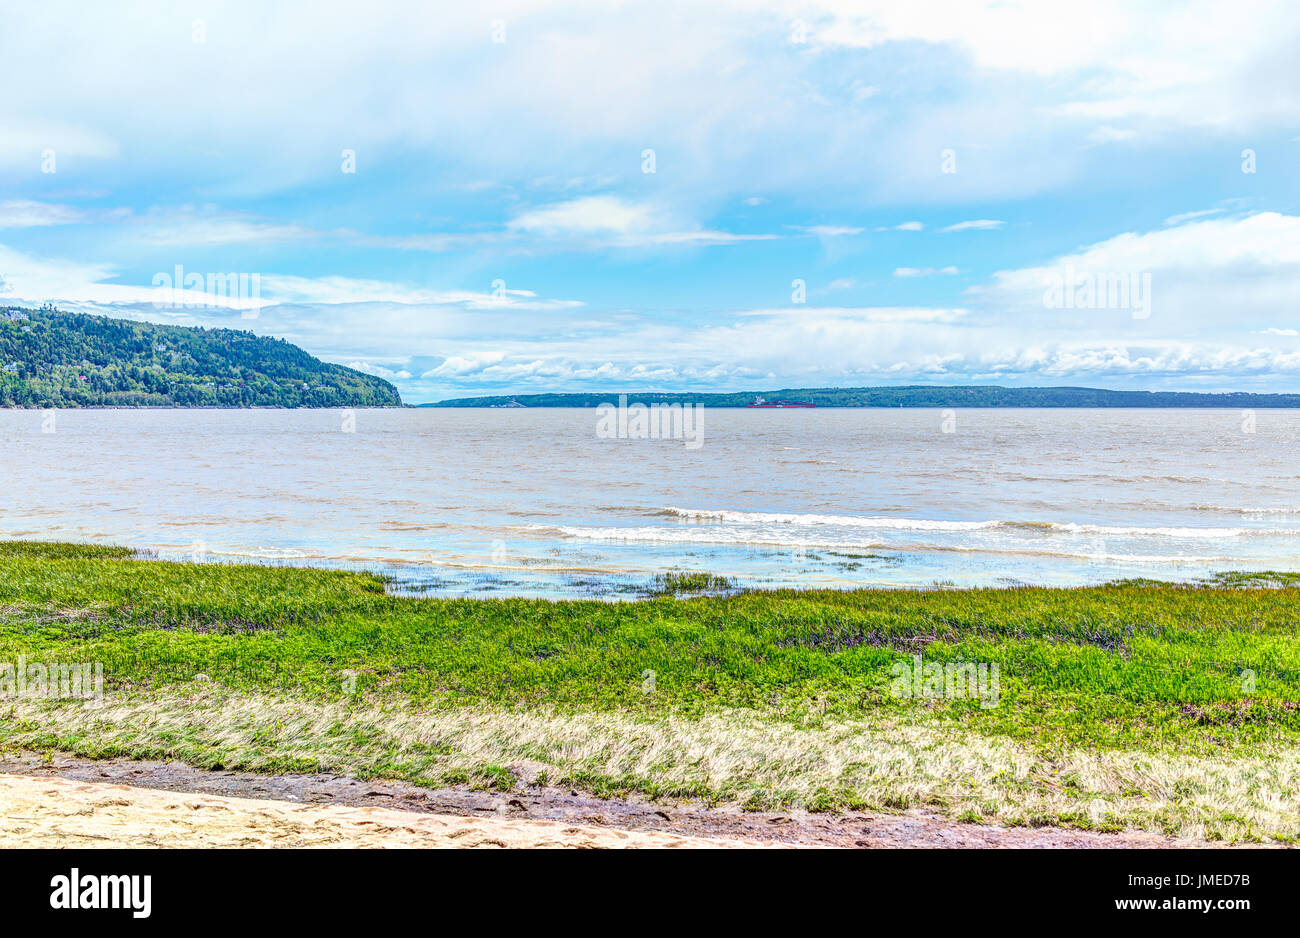 Baie-Saint-Paul au Québec, Canada et l'autre rive de la plage avec des vagues et de l'herbe verte Banque D'Images